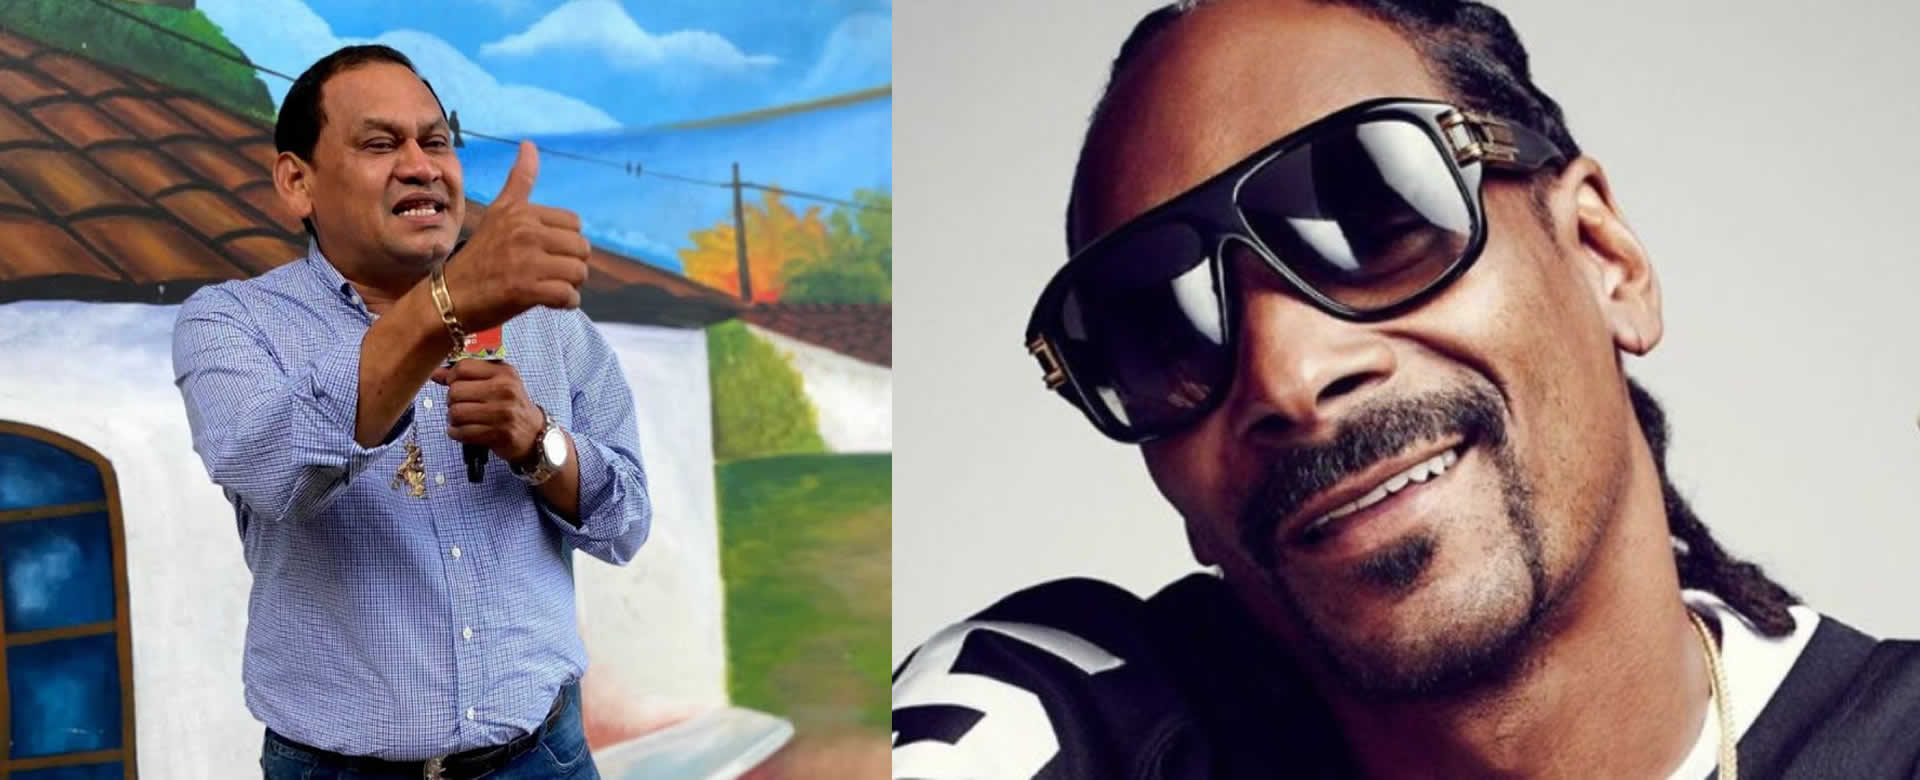 Caldera llega a las redes sociales de Snoop Dogg con un baile sensual